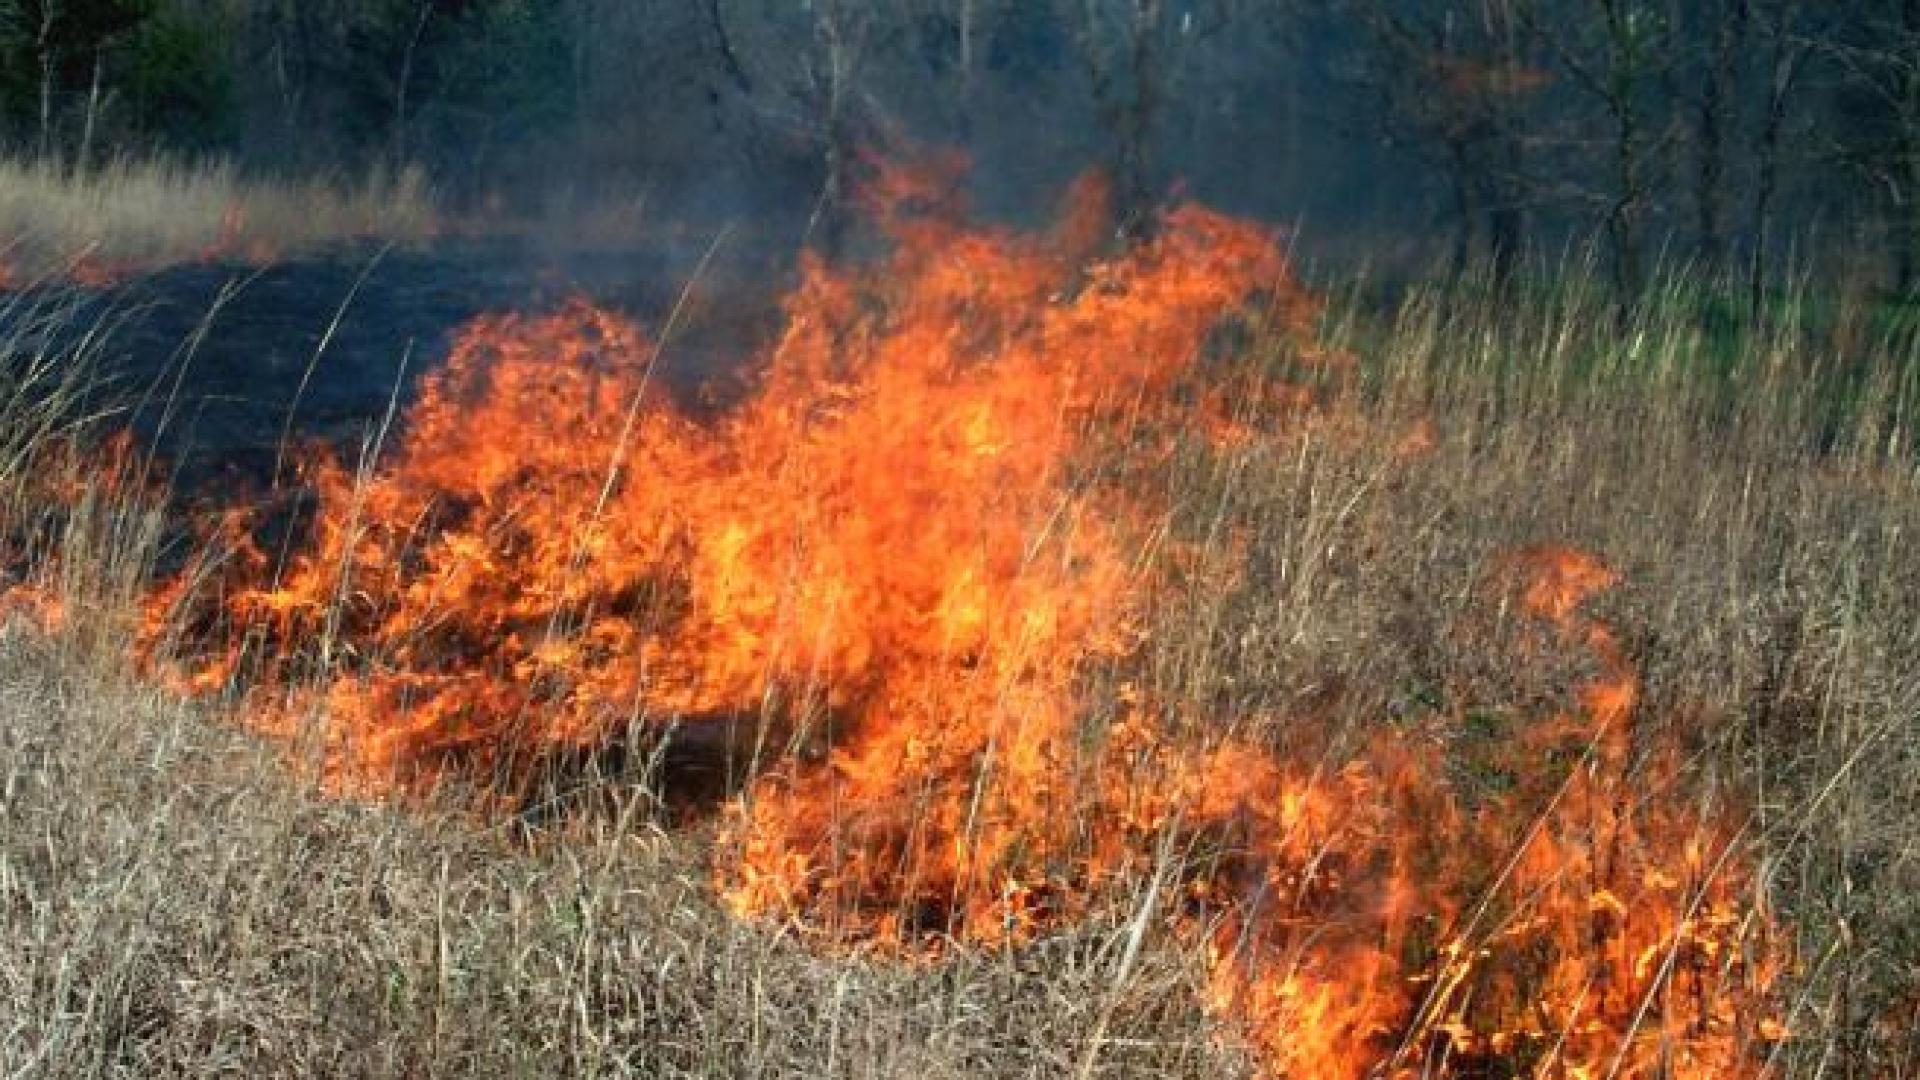 Prescribed burn in tallgrass prarie